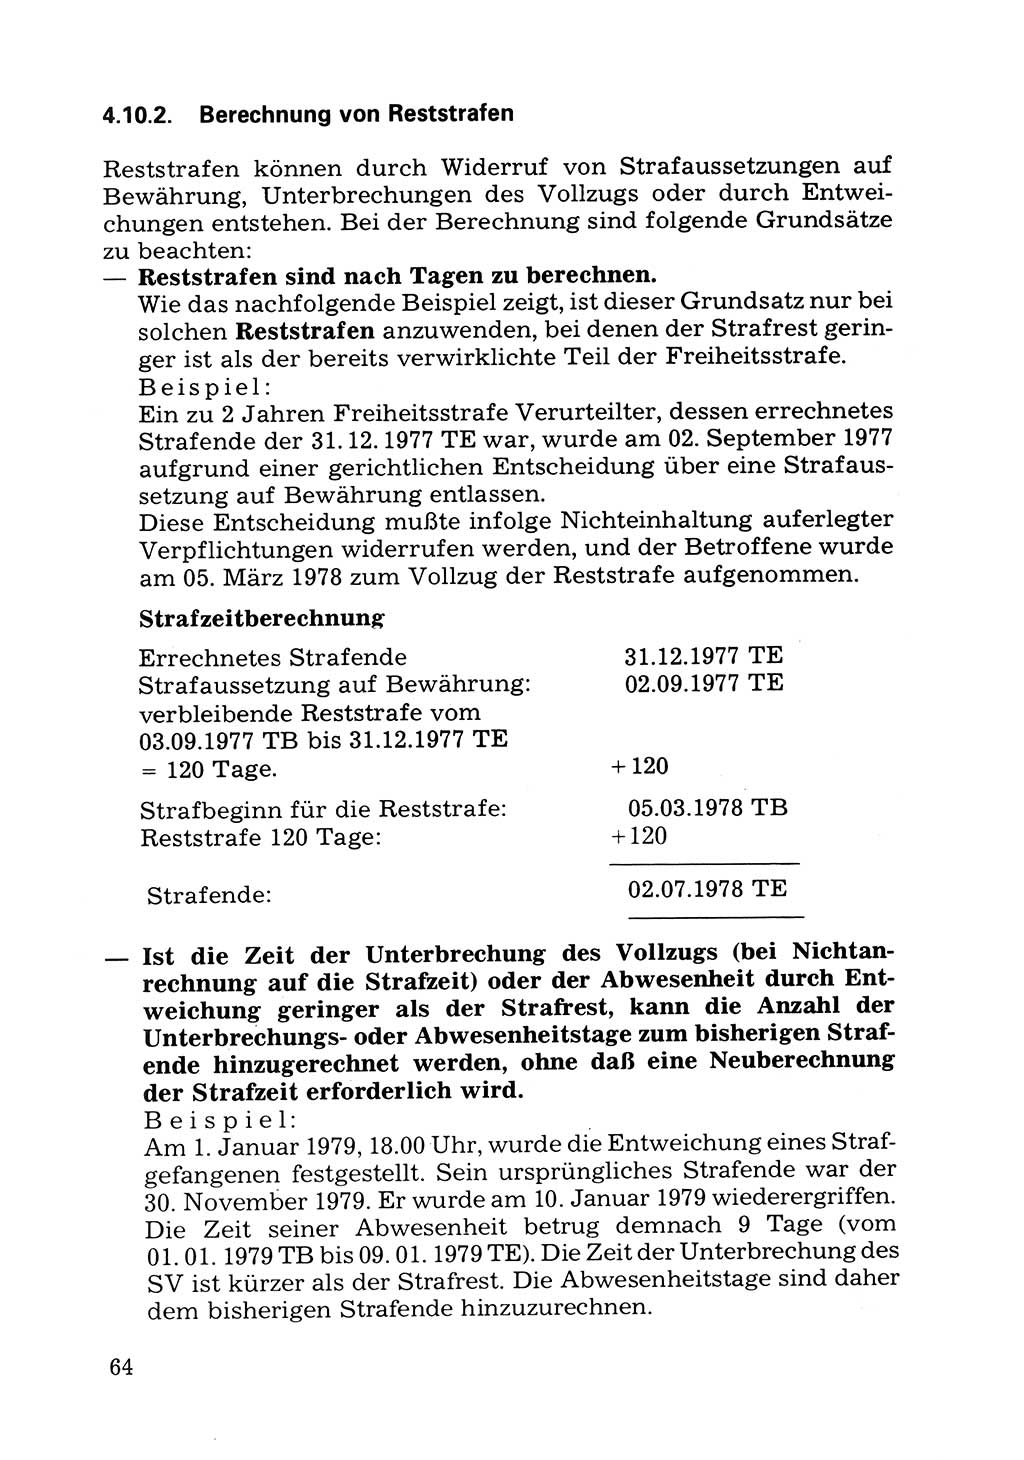 Verwaltungsmäßige Aufgaben beim Vollzug der Untersuchungshaft (U-Haft) sowie der Strafen mit Freiheitsentzug (SV) [Deutsche Demokratische Republik (DDR)] 1980, Seite 64 (Aufg. Vollz. U-Haft SV DDR 1980, S. 64)